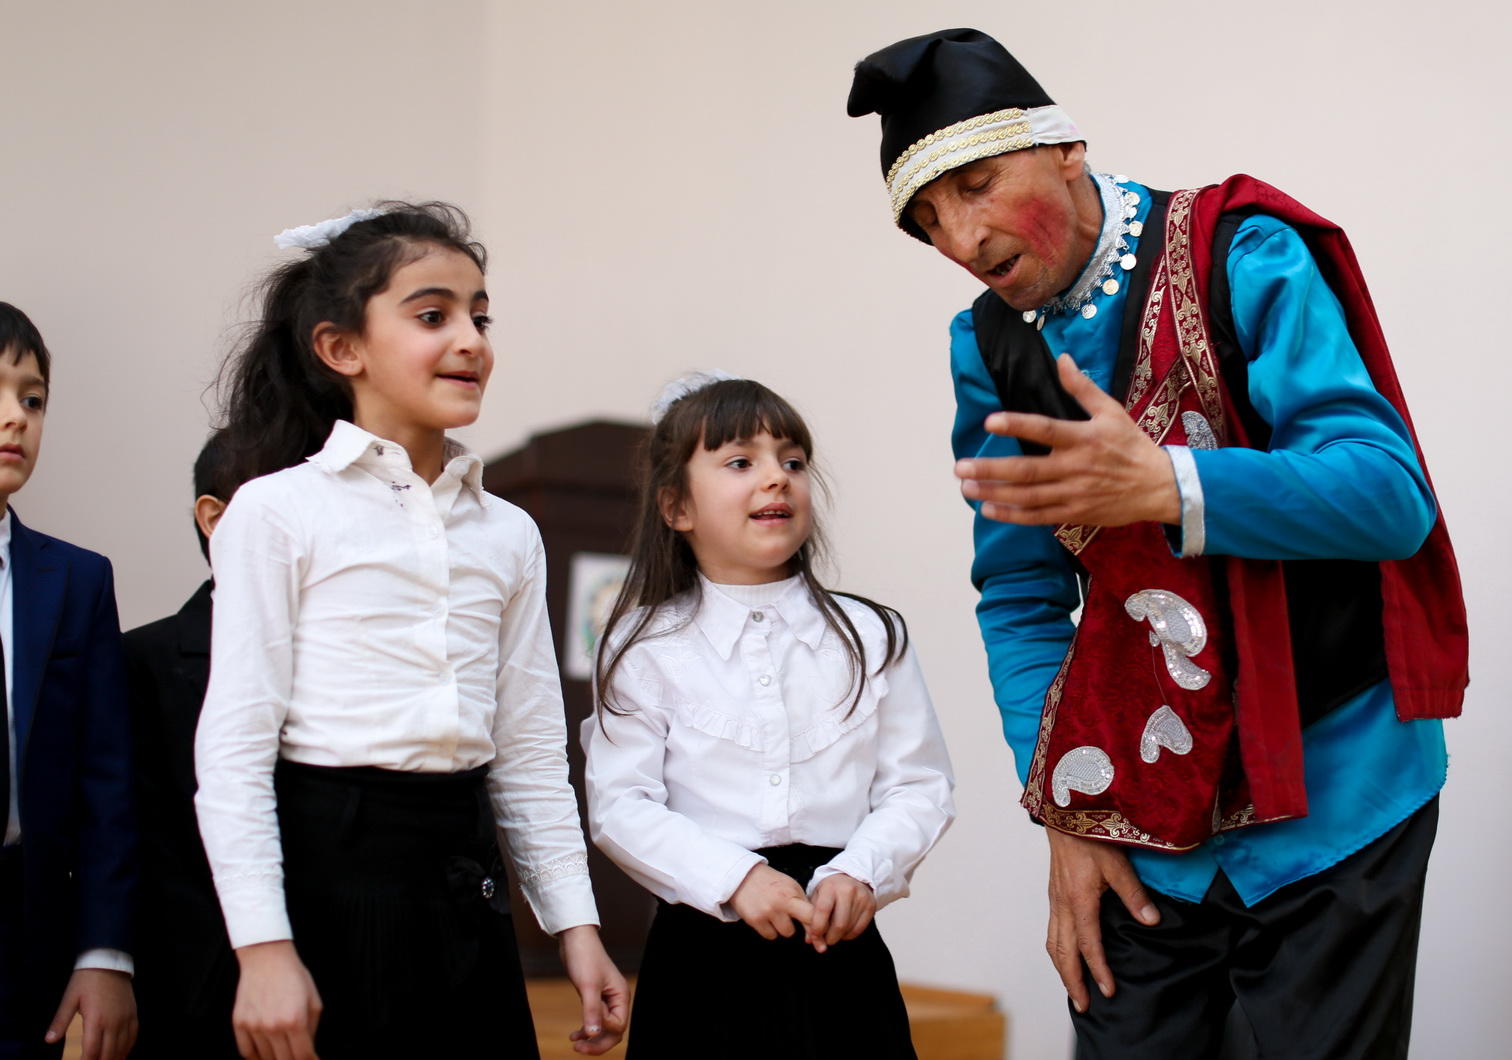 Bank Respublika организовал праздничное веселье в школах-интернатах в Загатале и Балакене (ФОТО)